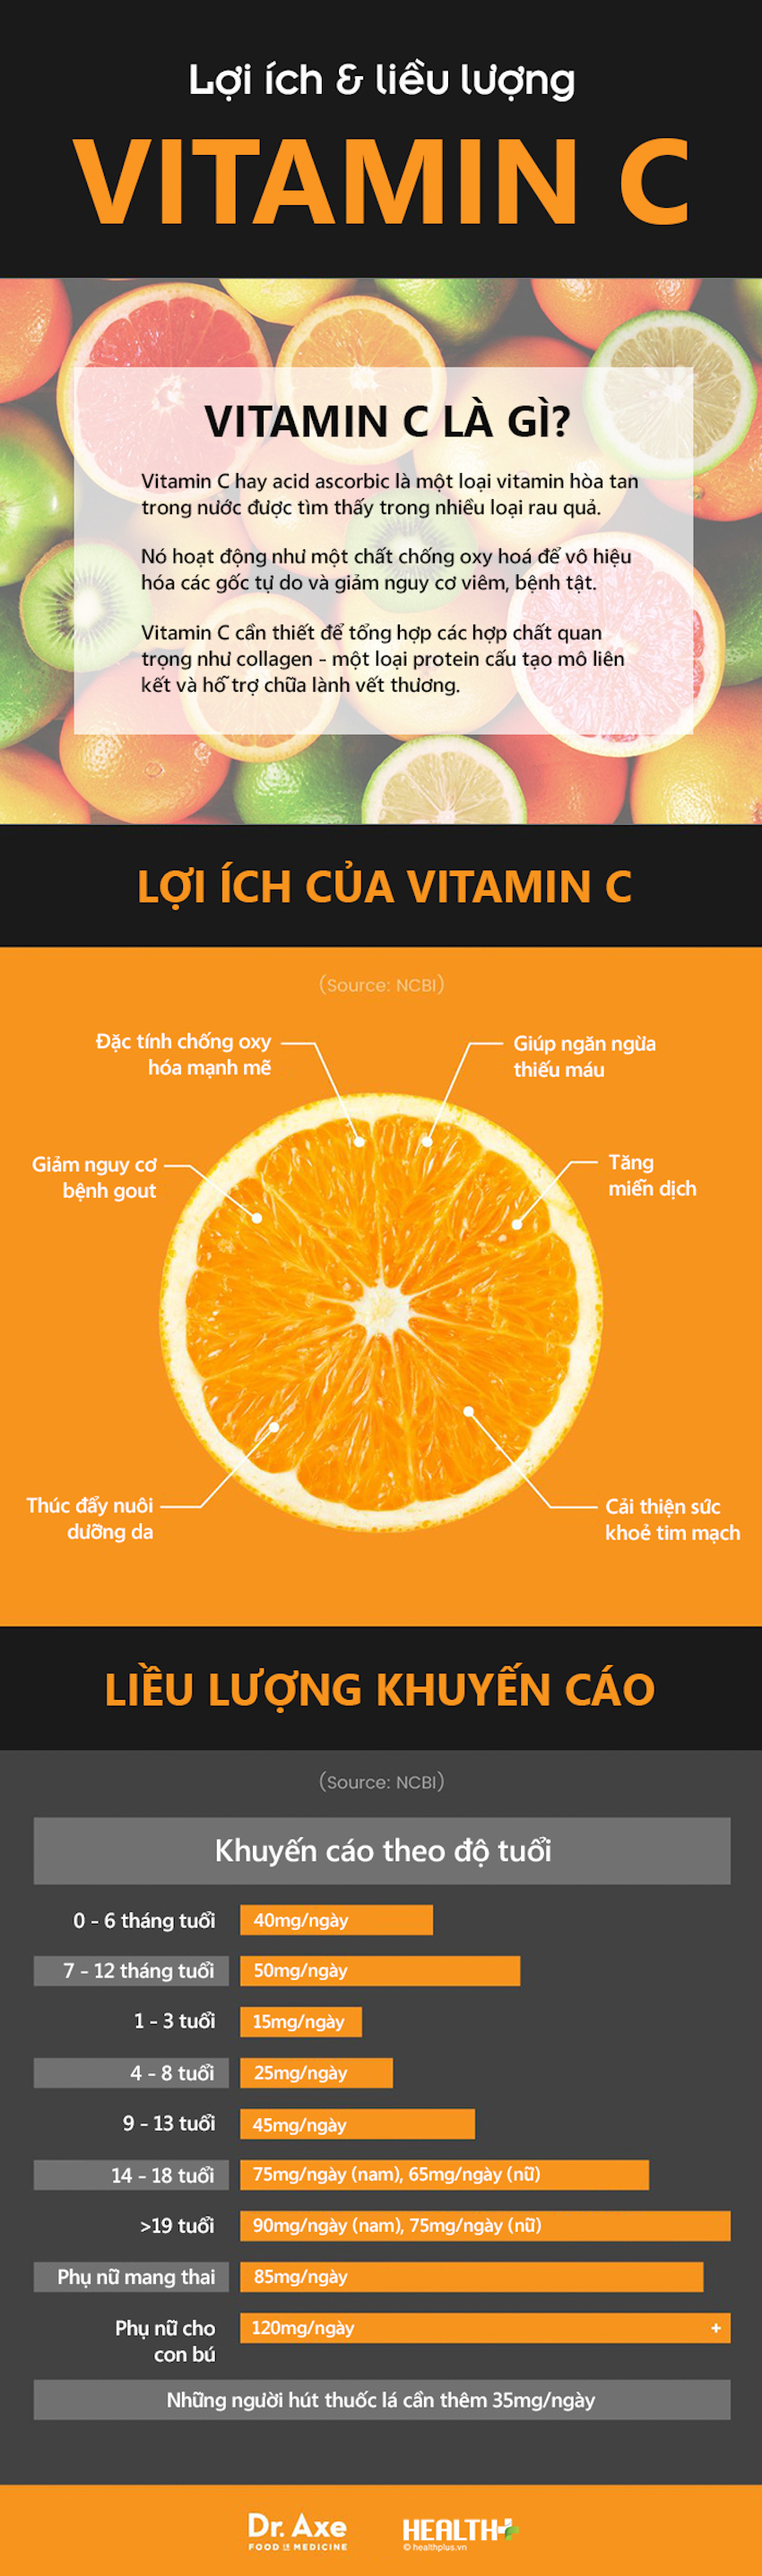 Bạn cần bao nhiêu vitamin C mỗi ngày?